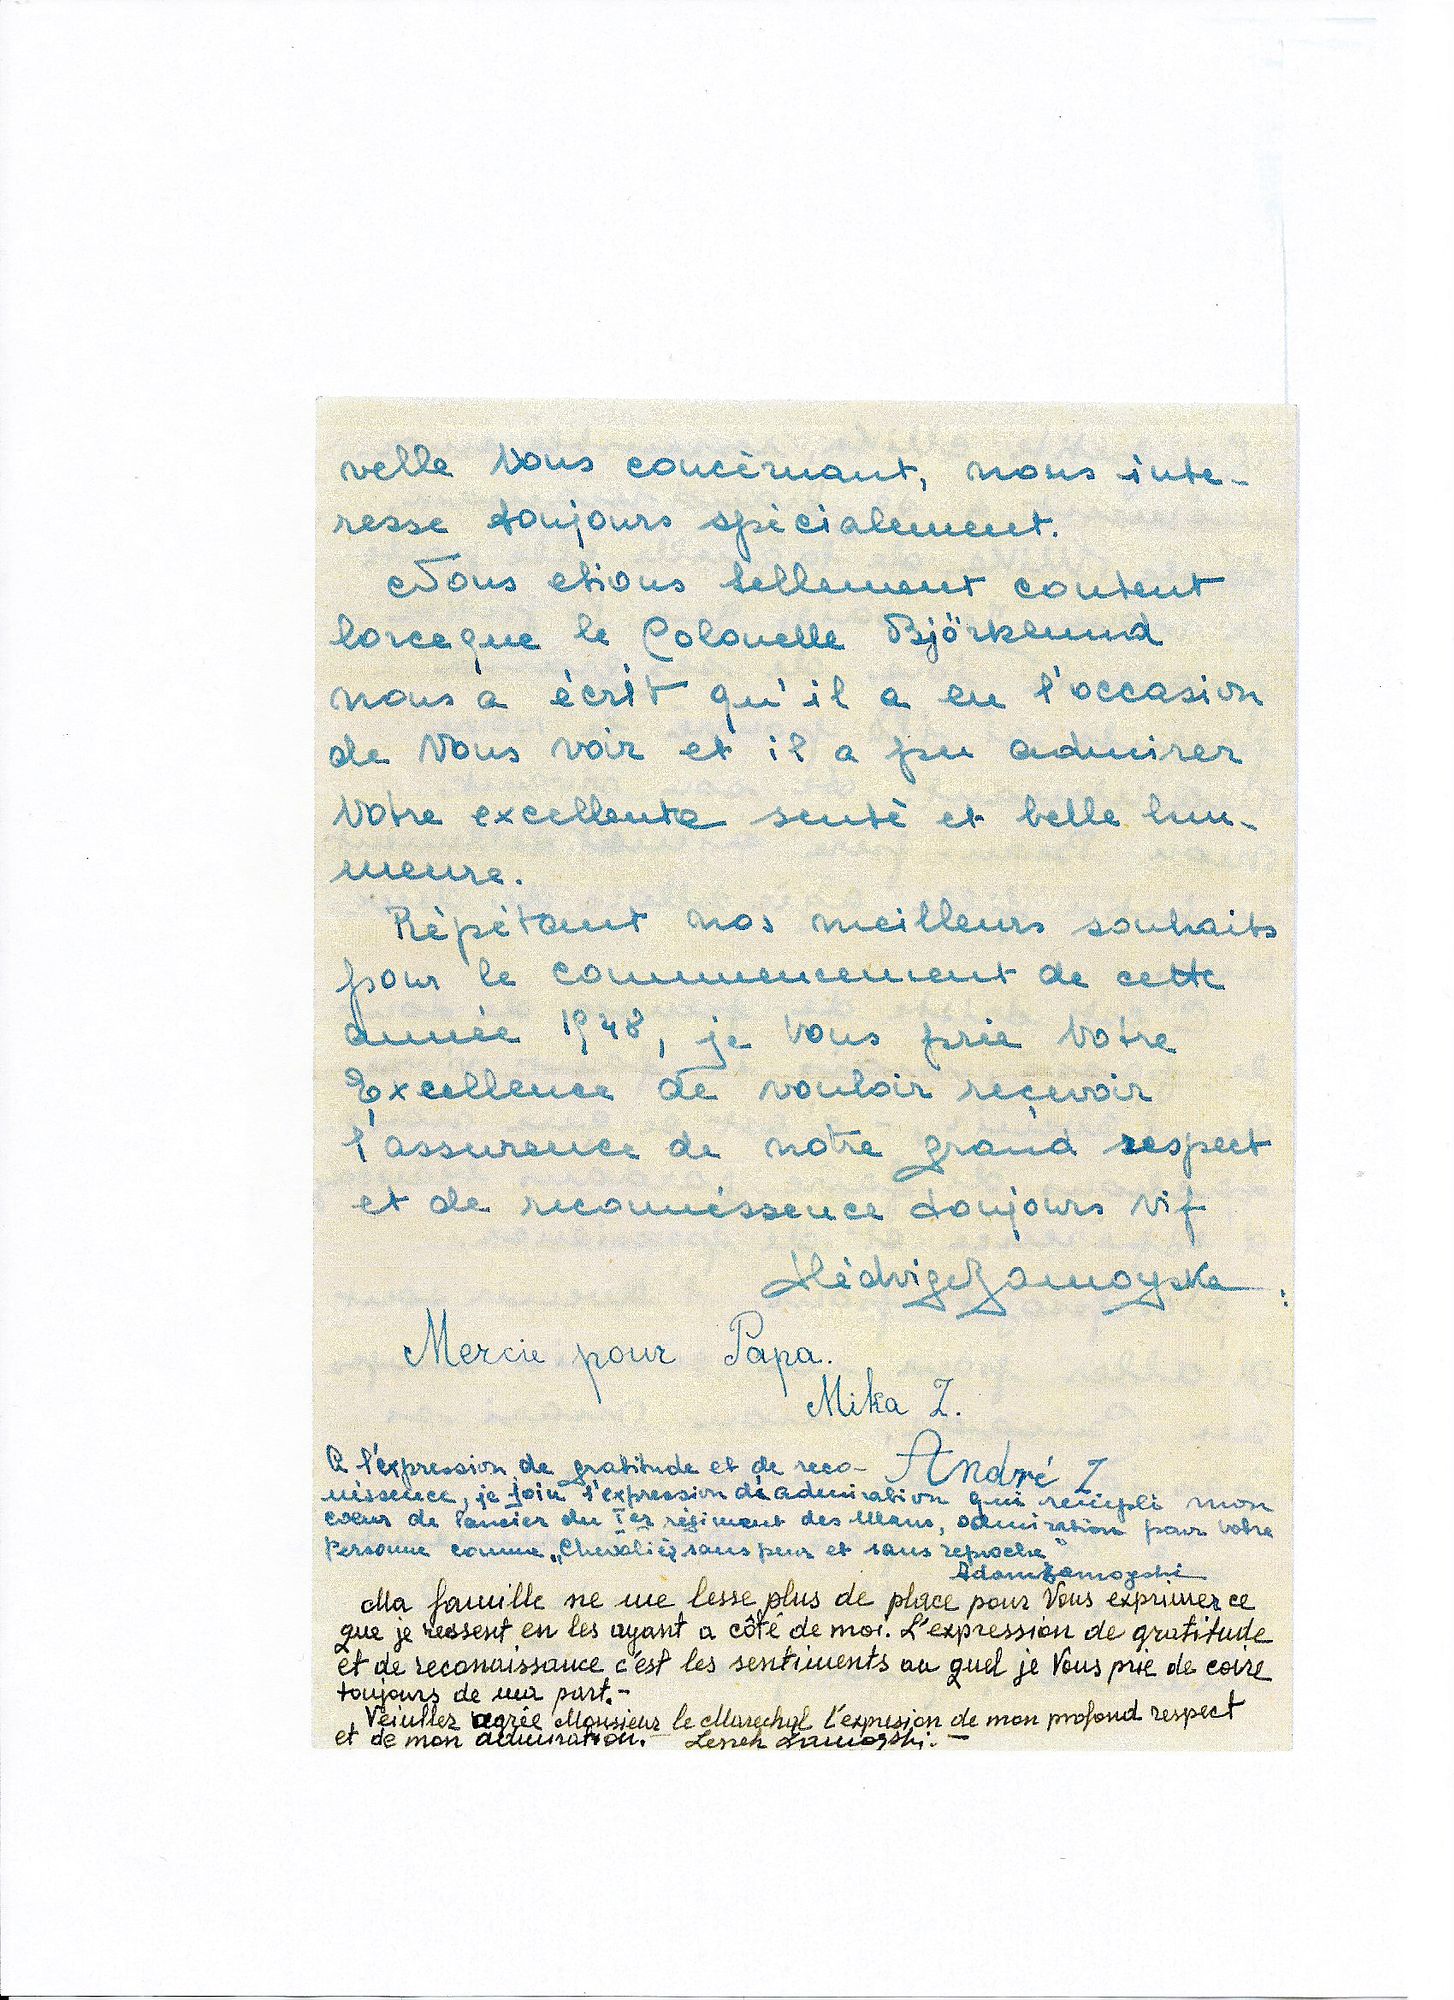 Zamoyskin perheen kirjeen viimeinen sivu Mannerheimille tammikuussa 1948. Lapset Mika ja Andrzej kirjoittavat ”Mercie pour Papa – Kiitos isästä”.